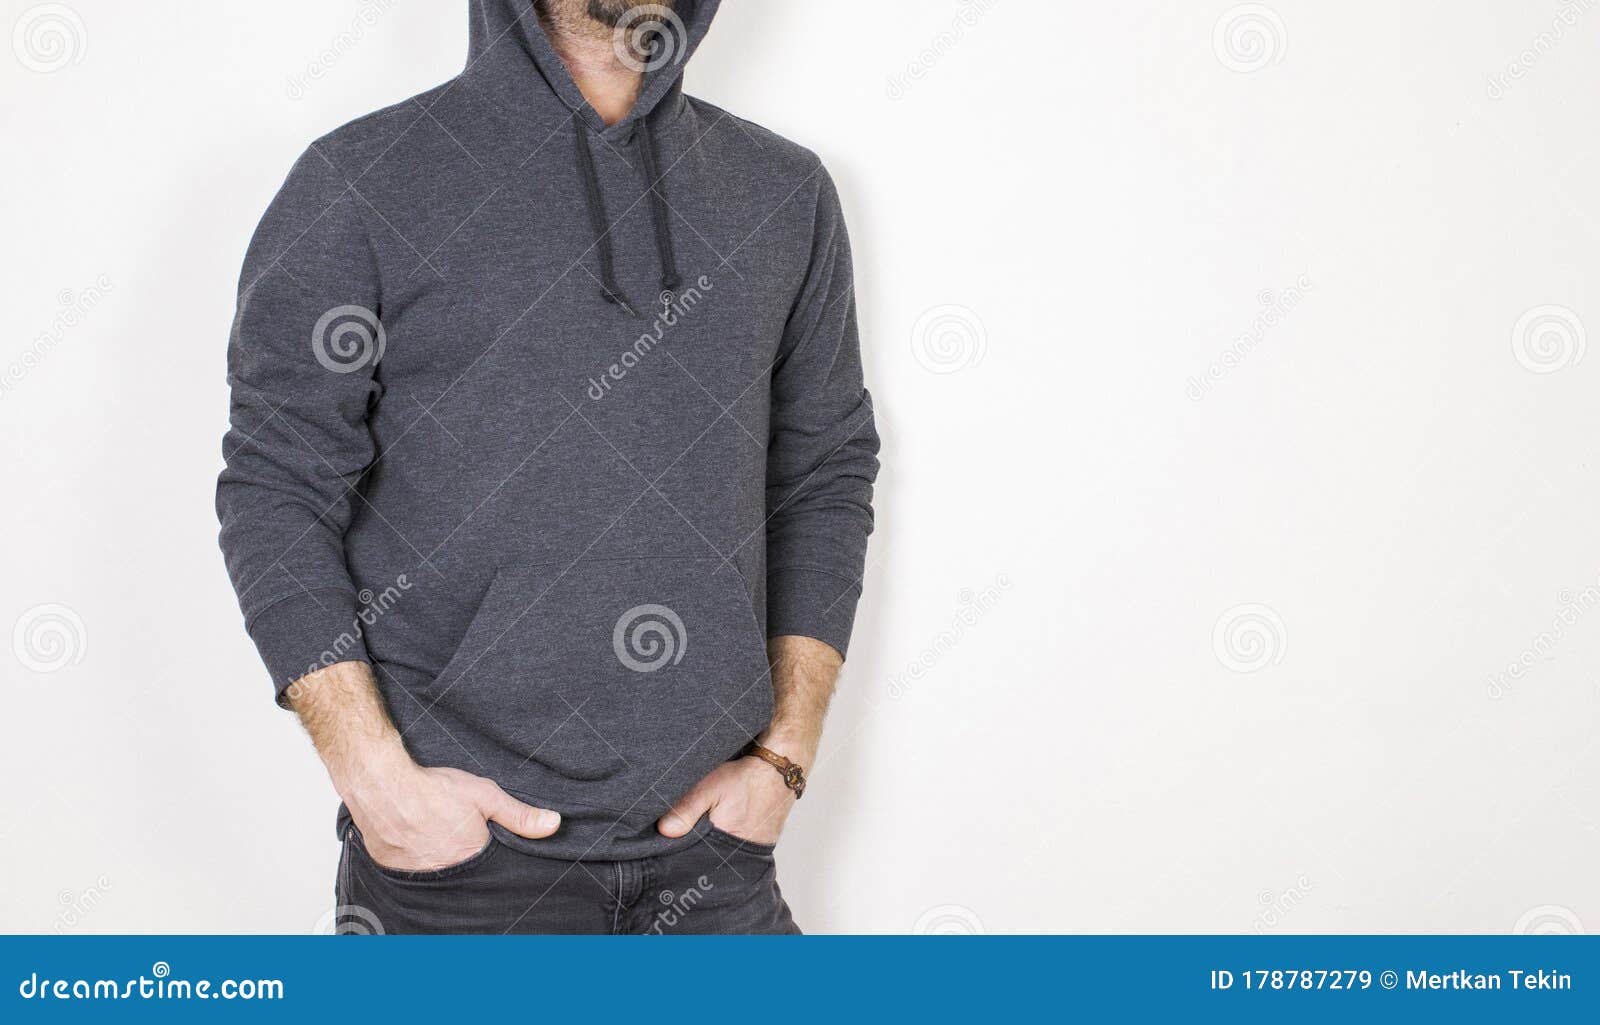 Download Blank Sweatshirt Mockup, Male Model, Isolated Background ...